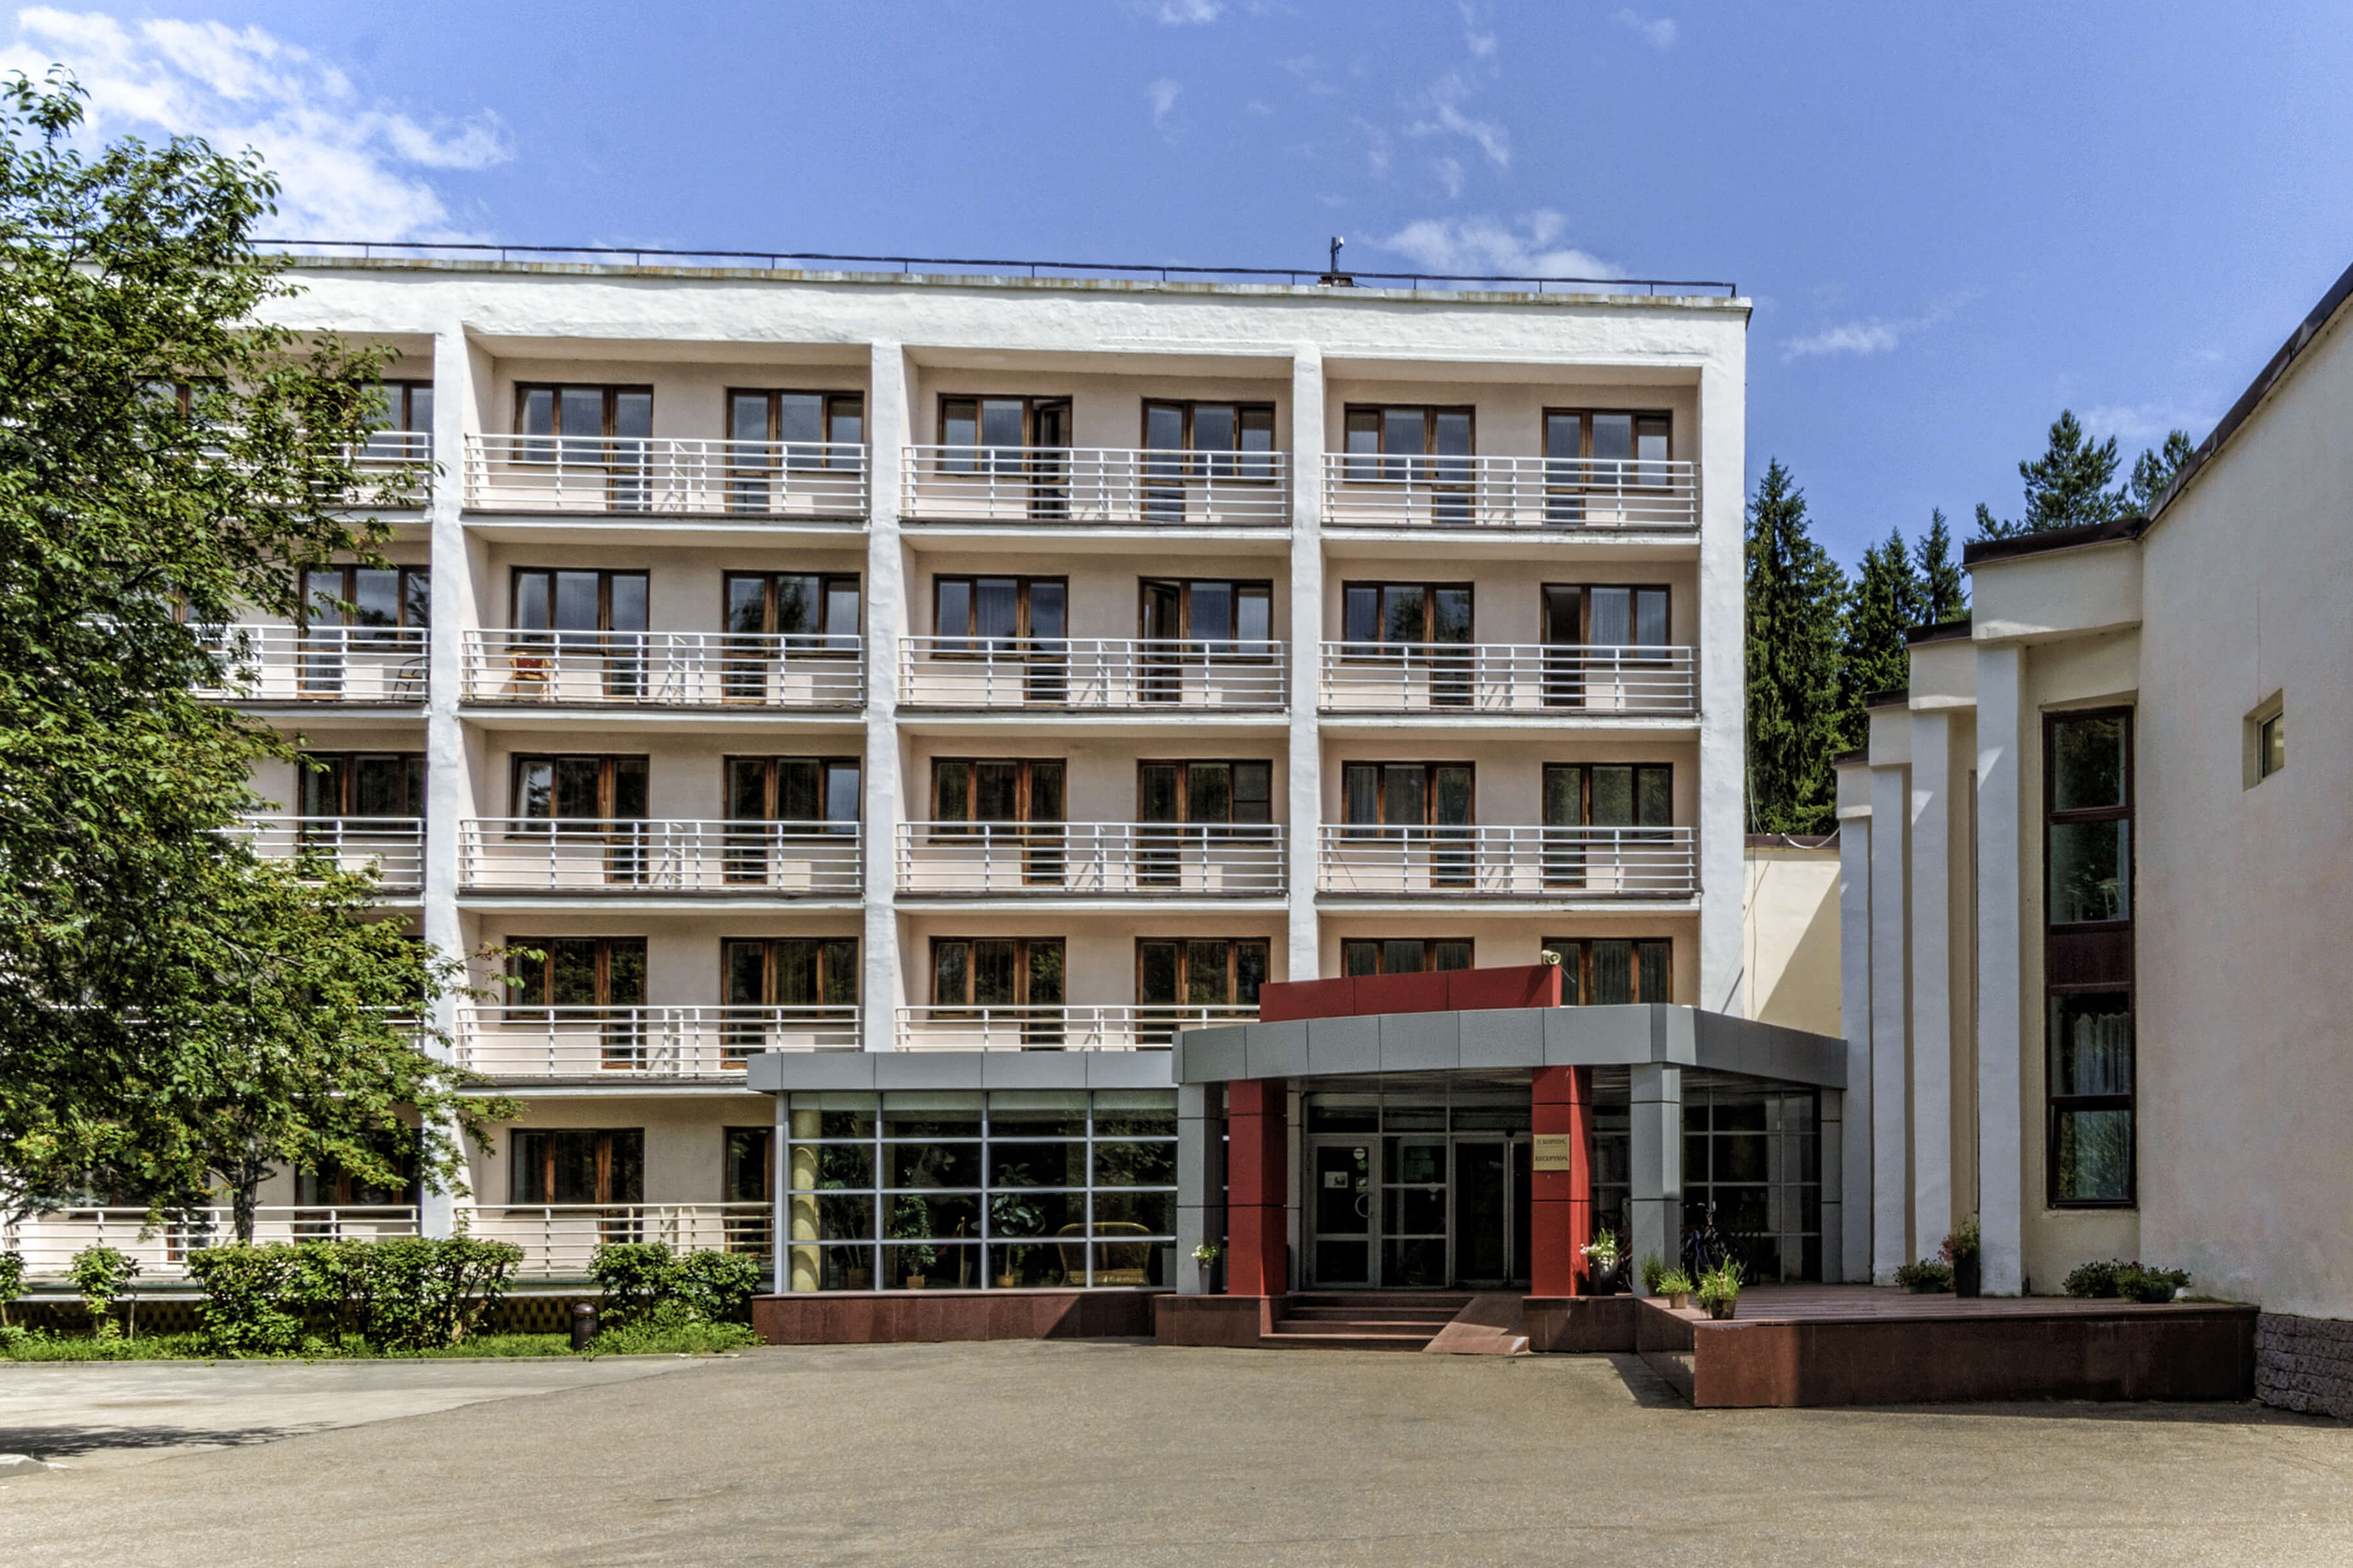 Здание базы отдыха советской постройки.